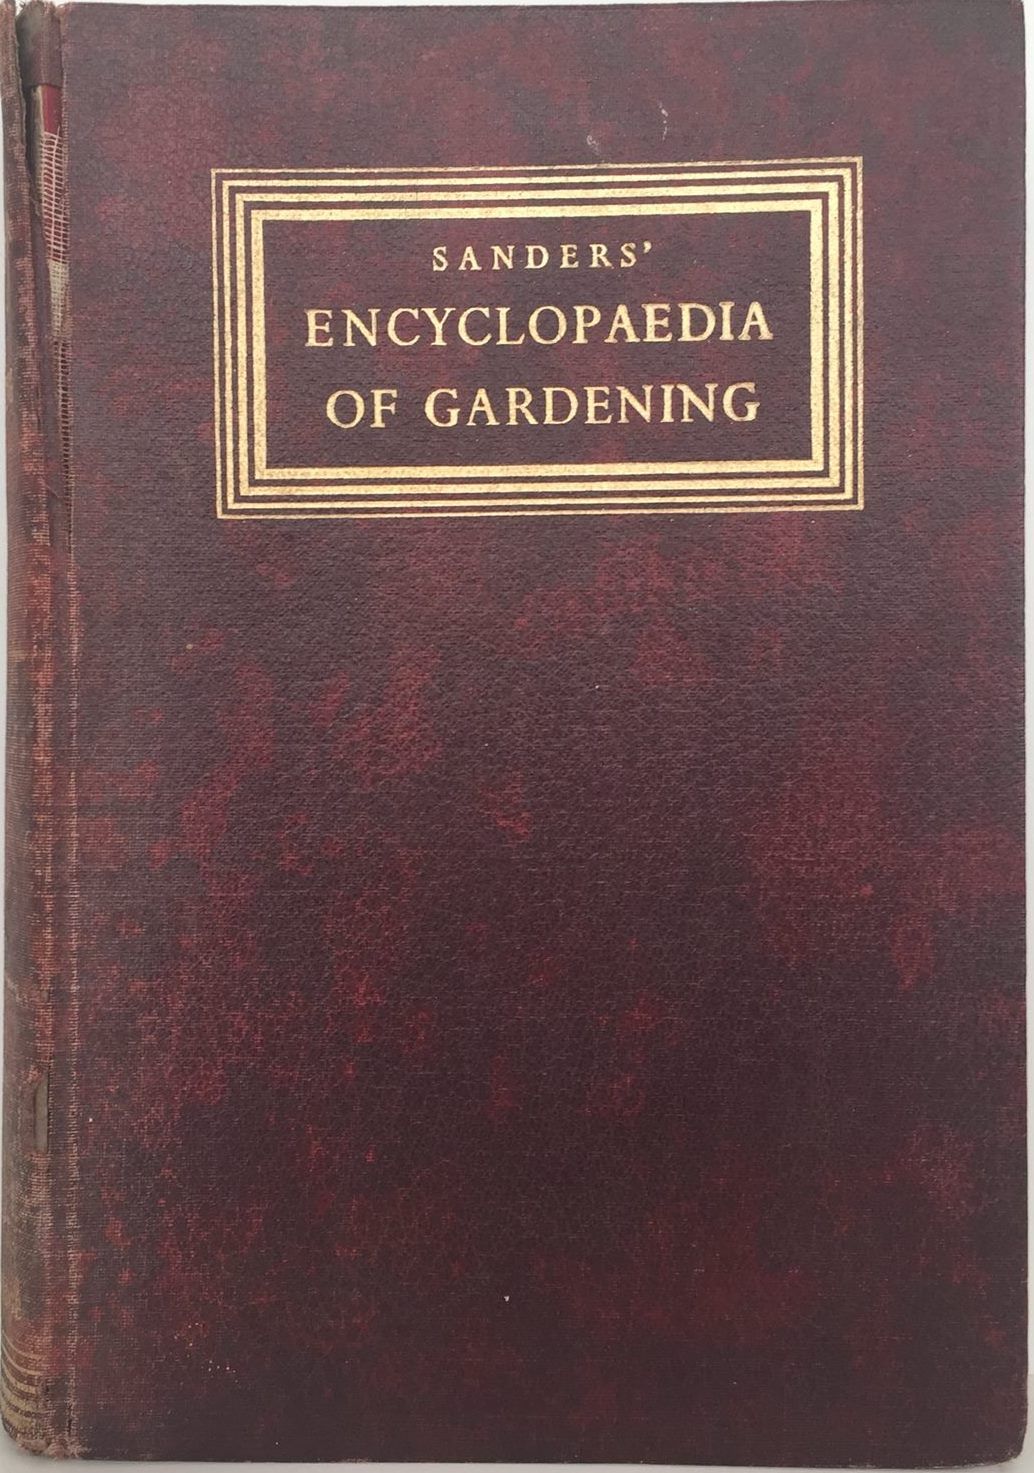 Sanders' Encyclopedia of Gardening